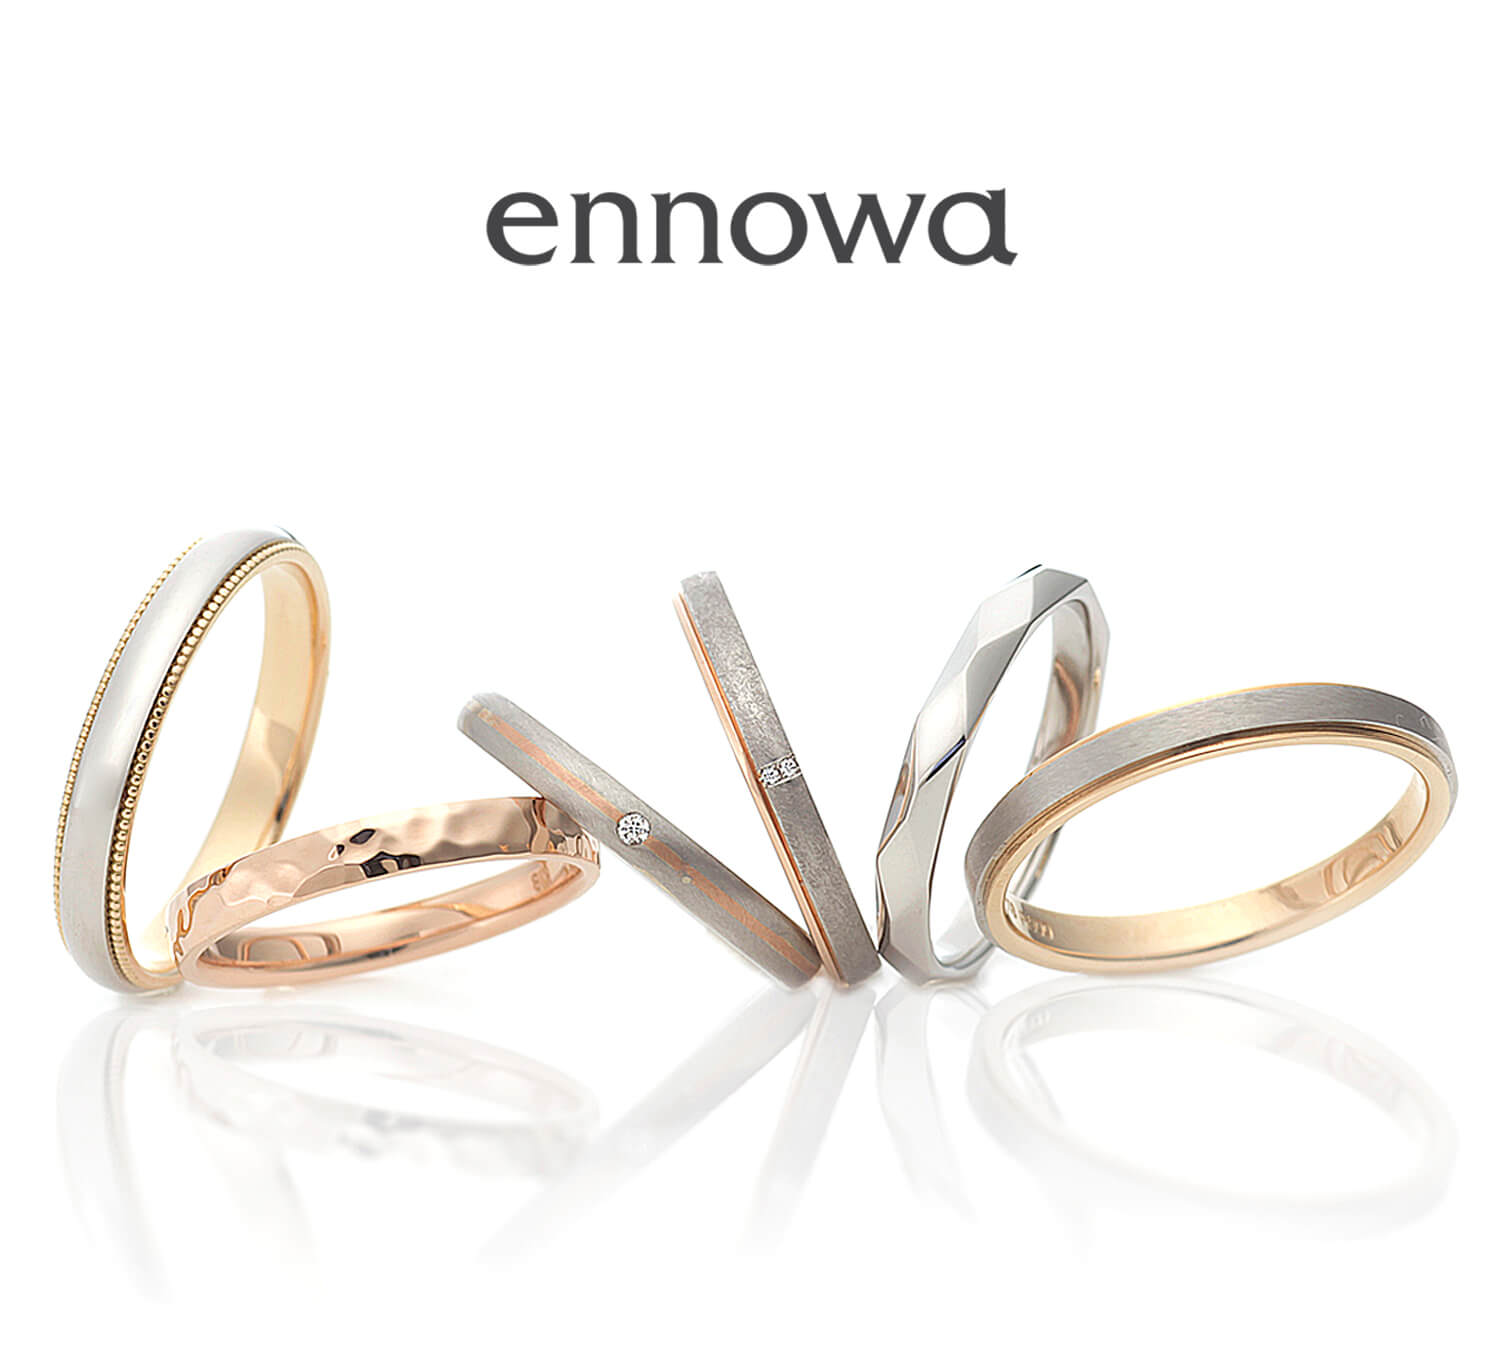 ennowaエンノワの結婚指輪